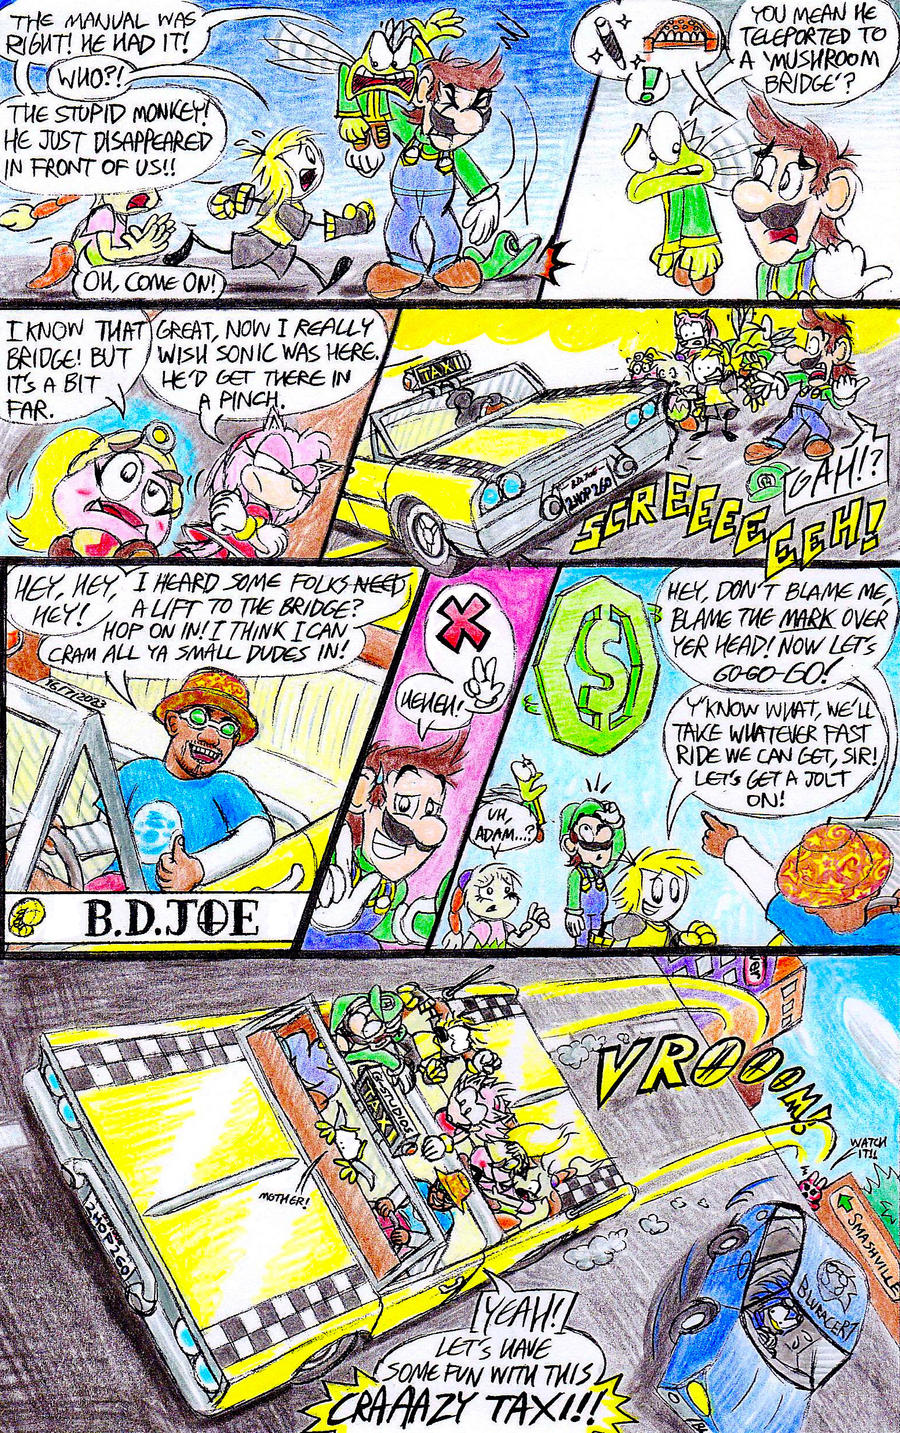 Comics with Mario - Comic Studio